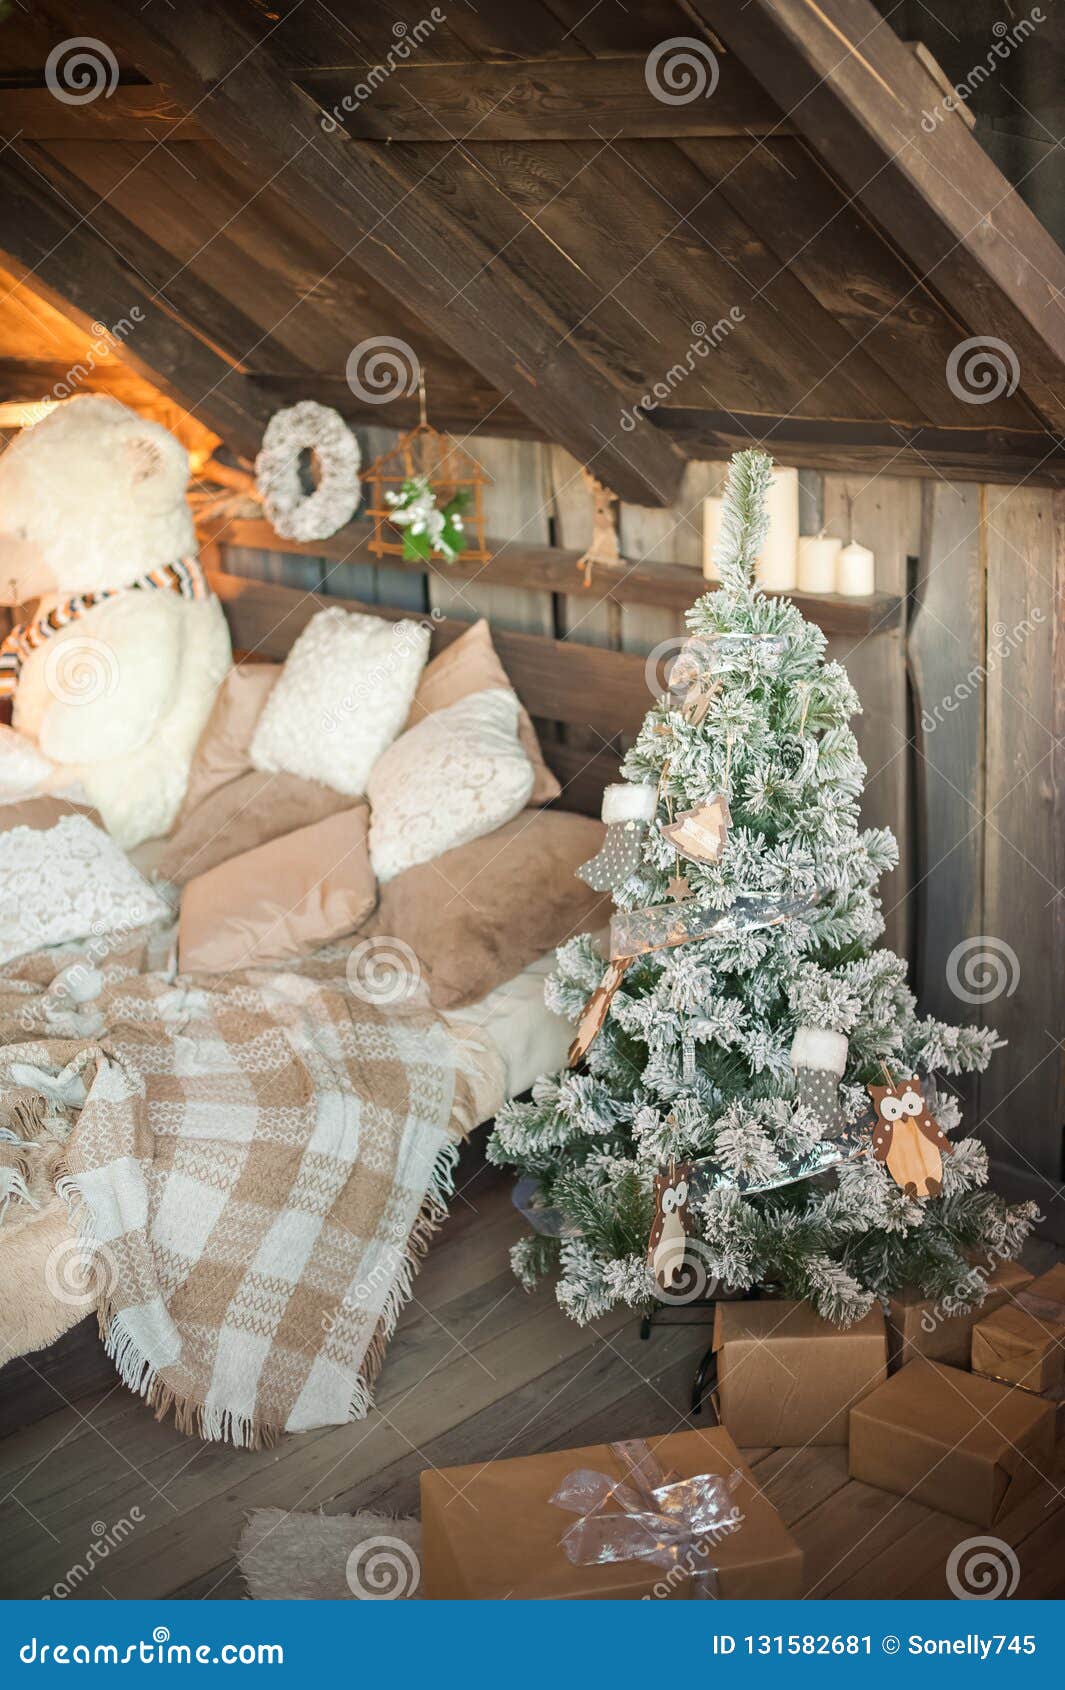 Scandinavian Bedroom Interior Under Christmas Textural